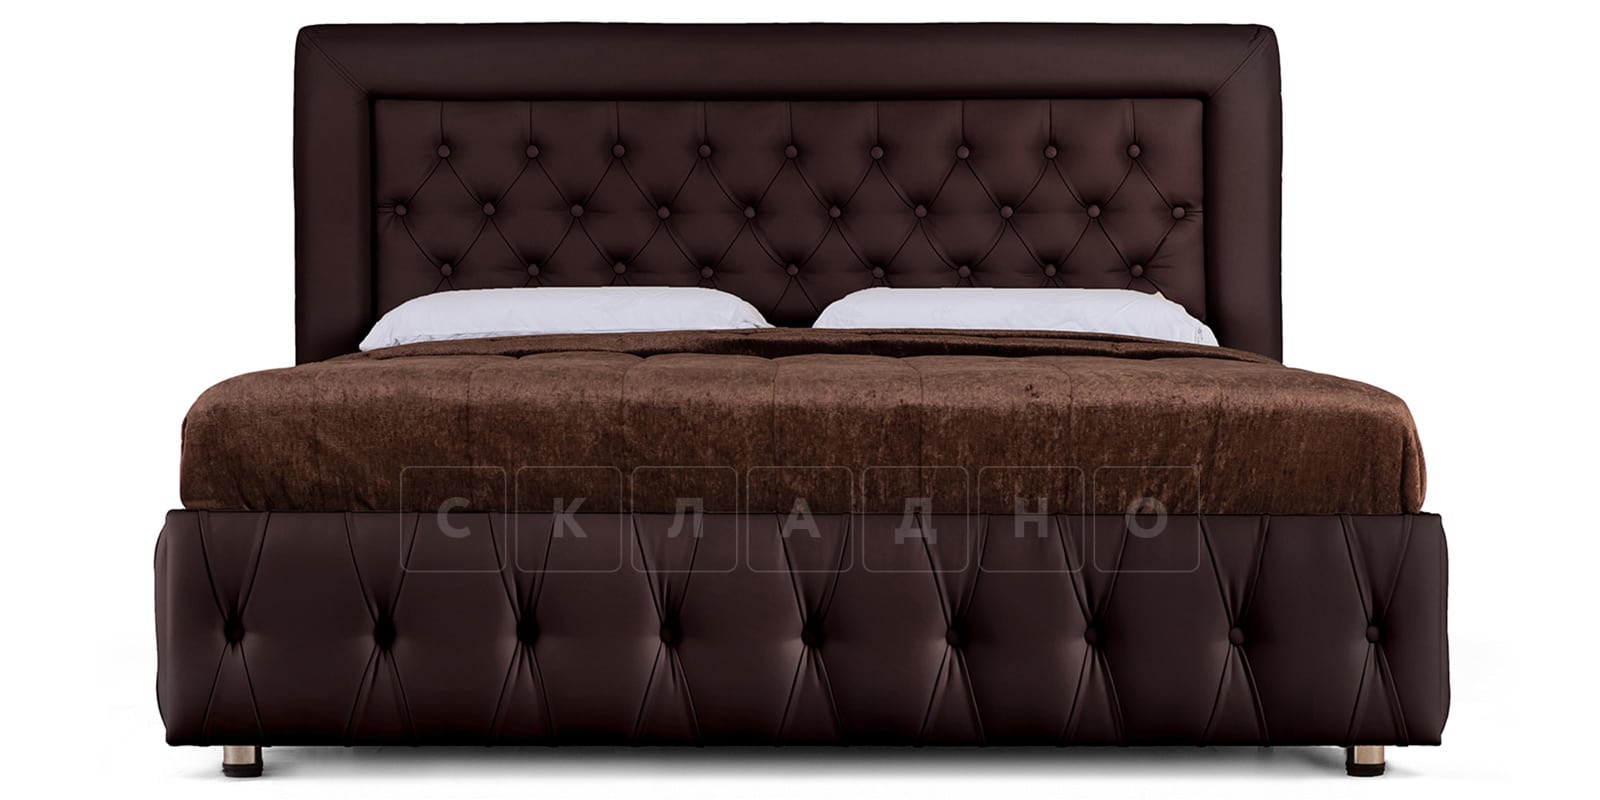 Мягкая кровать Малибу 160см экокожа шоколадного цвета вариант 7-2 фото 2 | интернет-магазин Складно